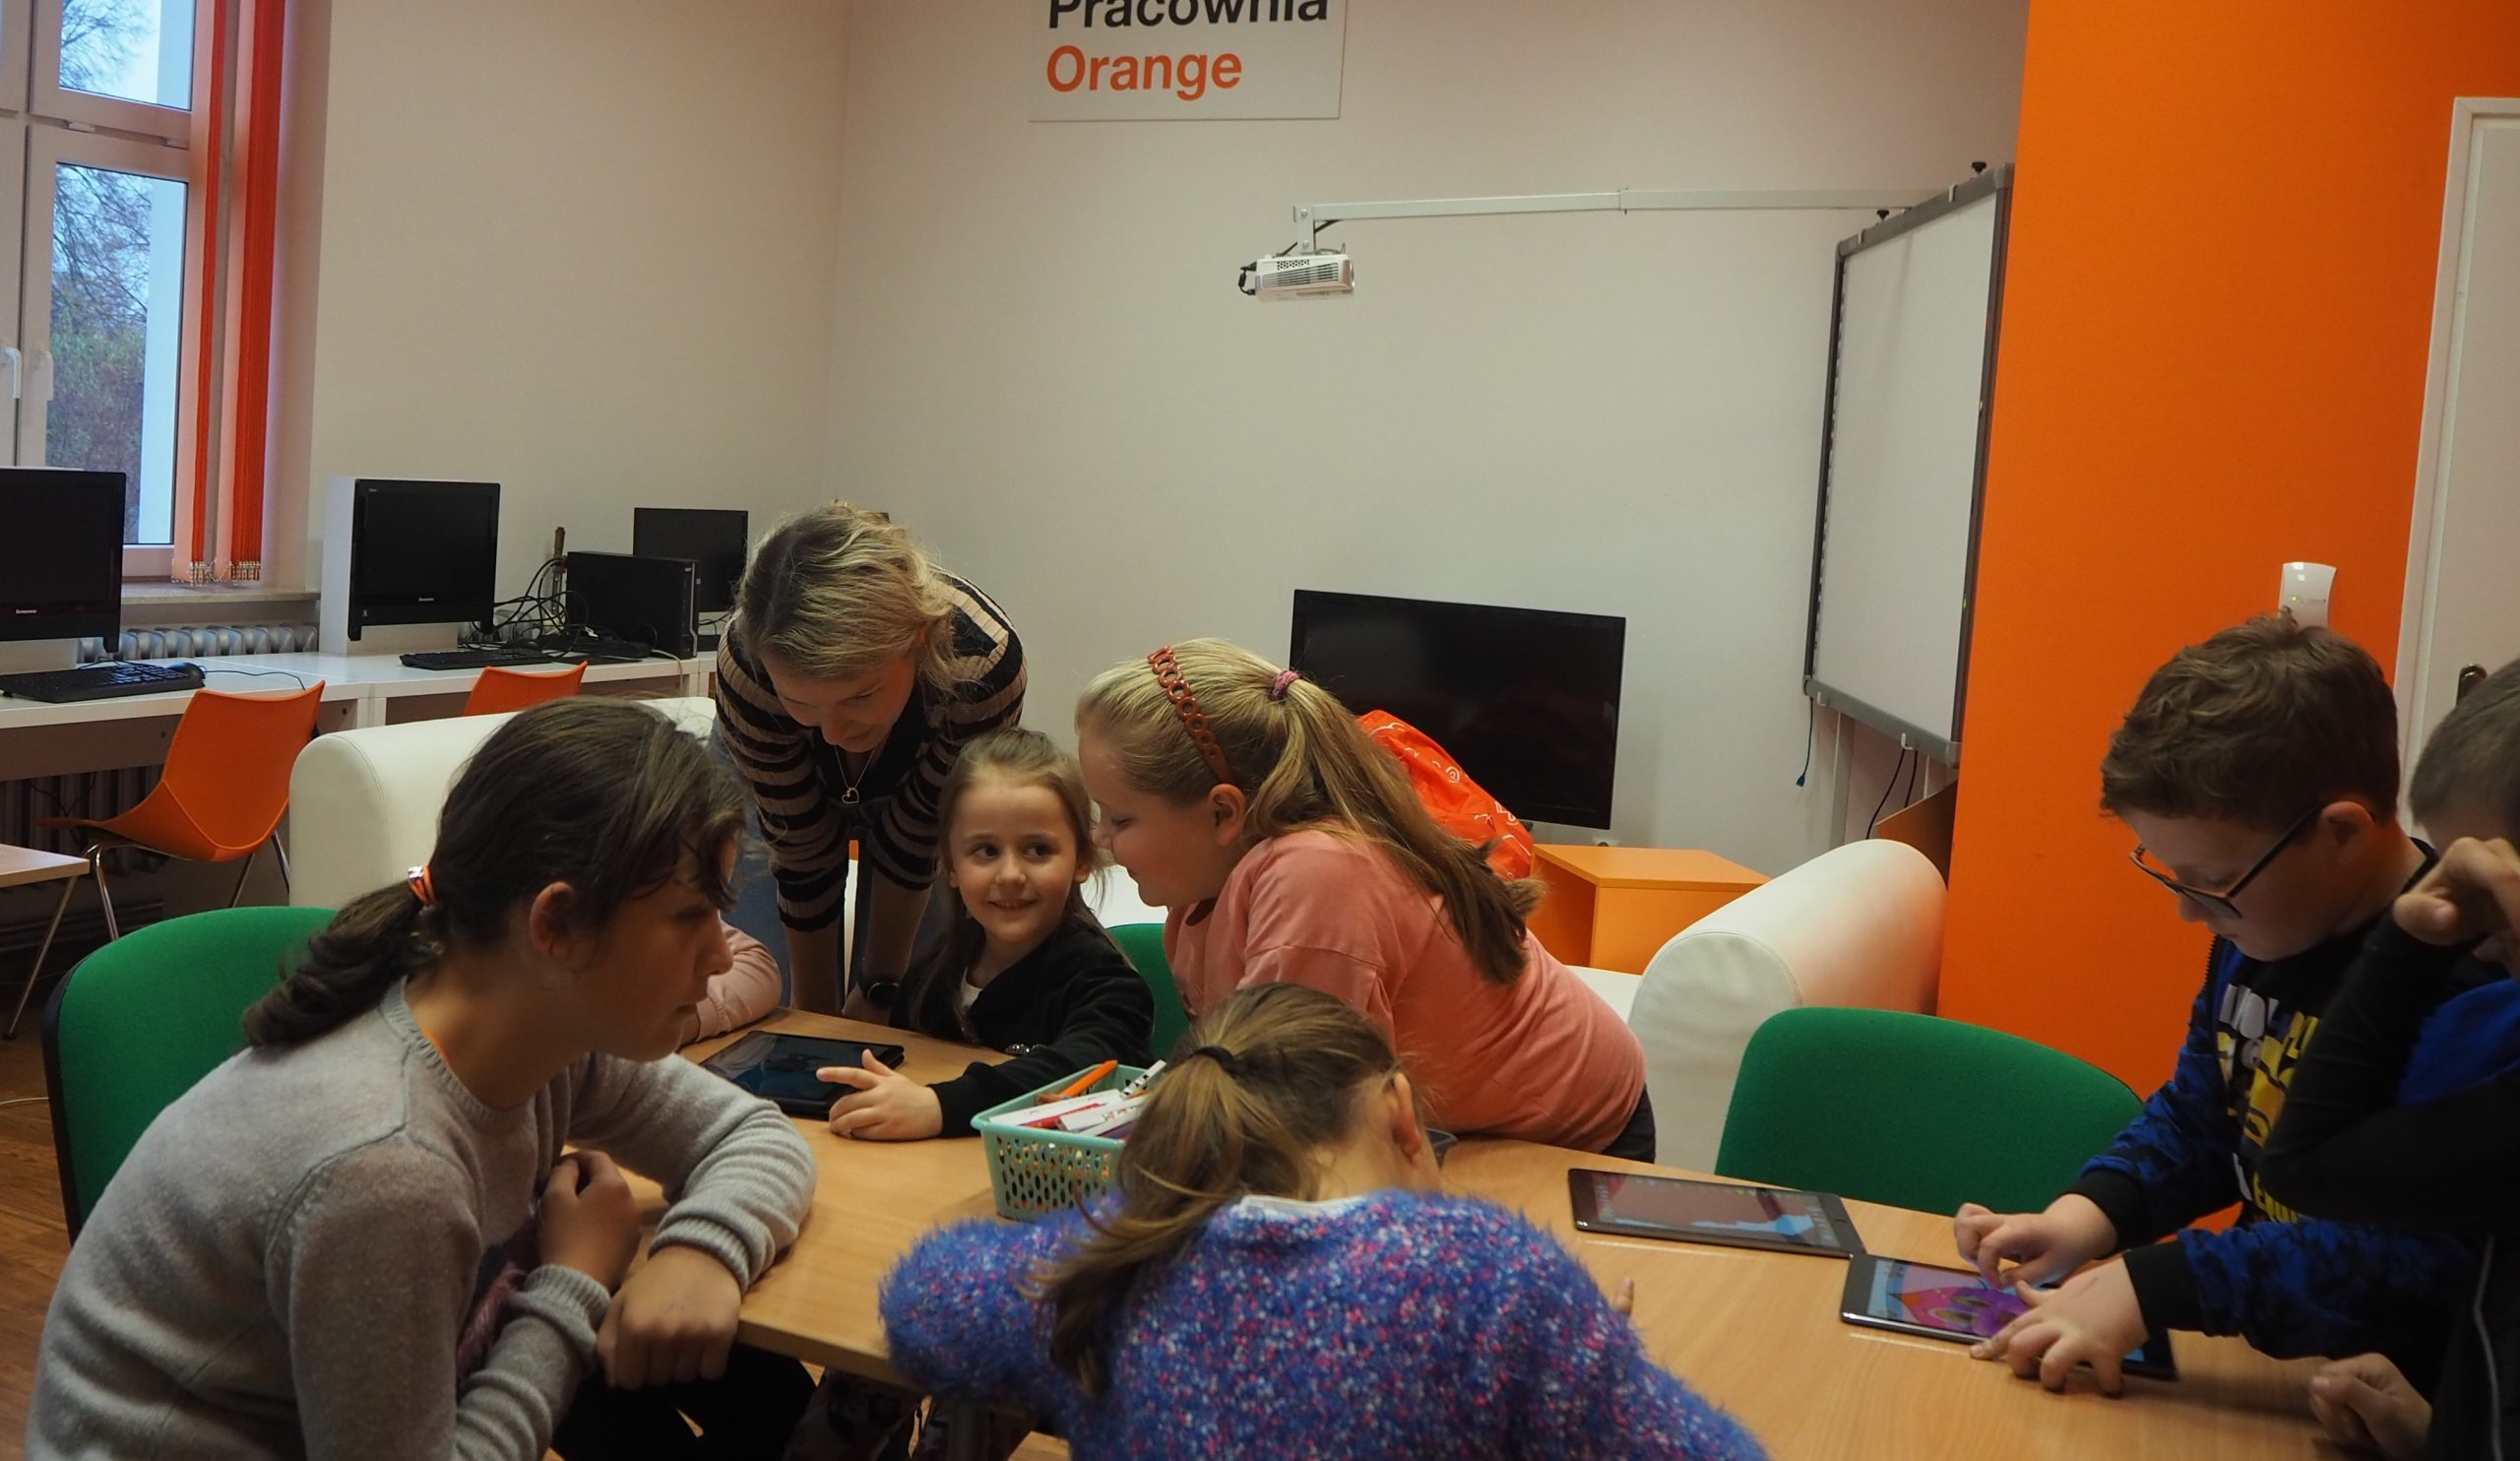 Grupa dzieci z tabletami, podczas zabawy aplikacją Color Quest.